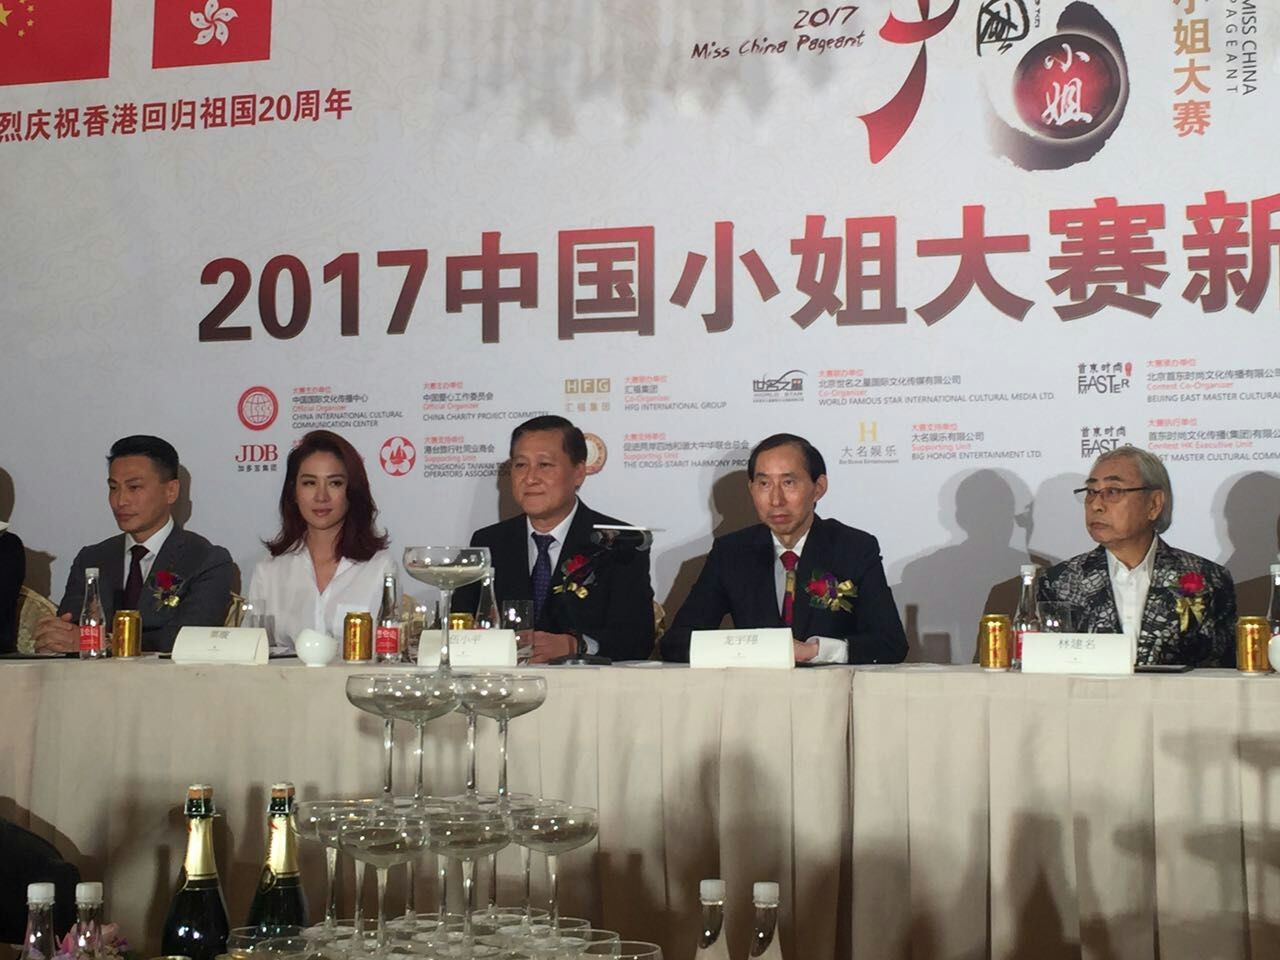 2017中国小姐大赛在香港举办发布会 汇福集